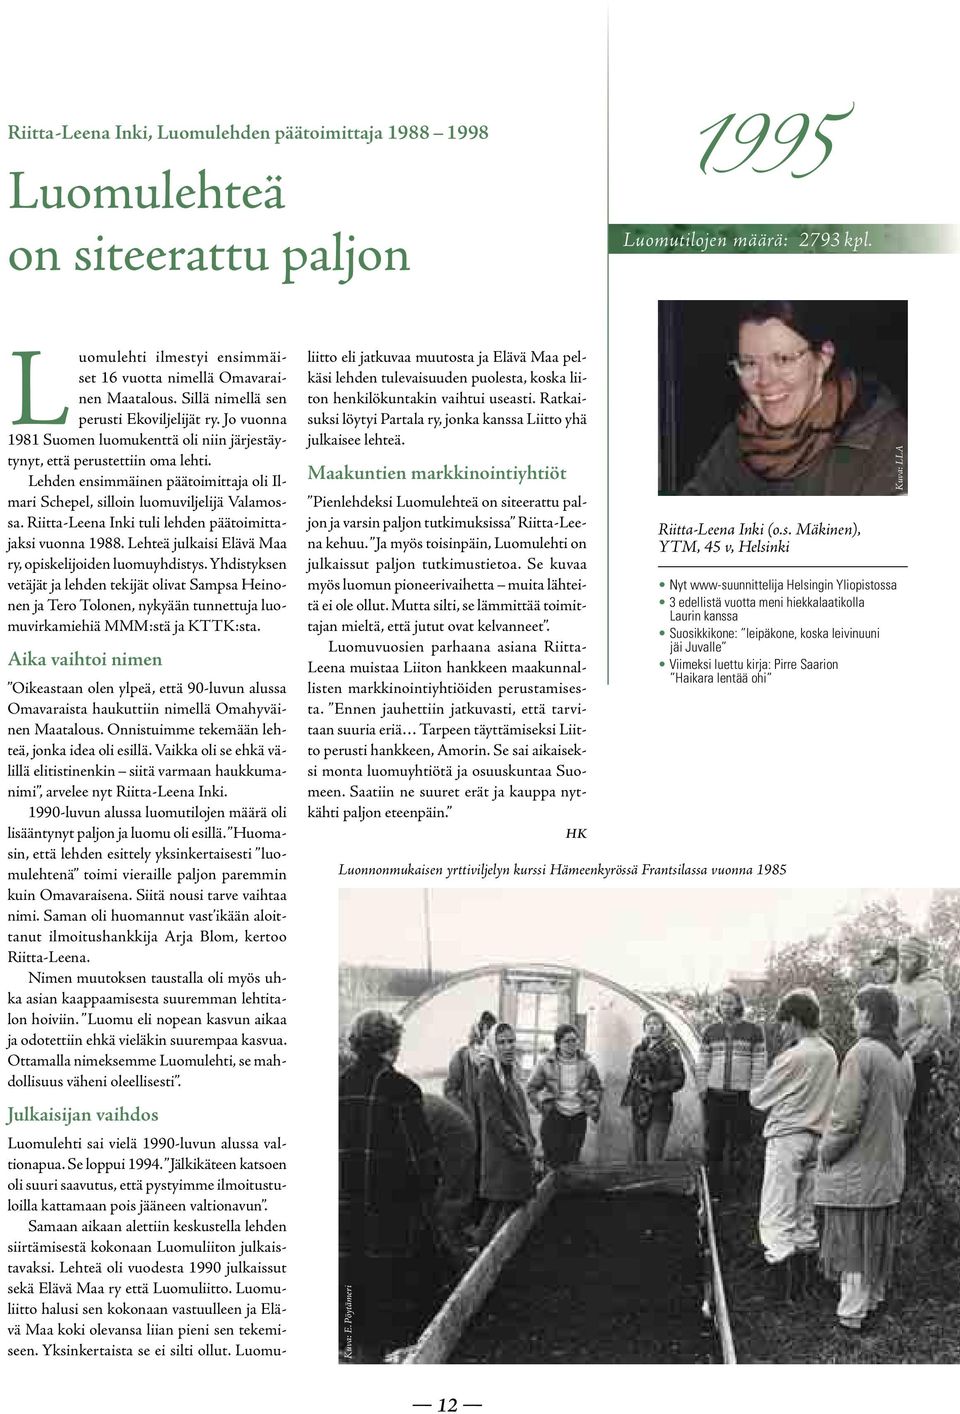 Lehden ensimmäinen päätoimittaja oli Ilmari Schepel, silloin luomuviljelijä Valamossa. Riitta-Leena Inki tuli lehden päätoimittajaksi vuonna 1988.